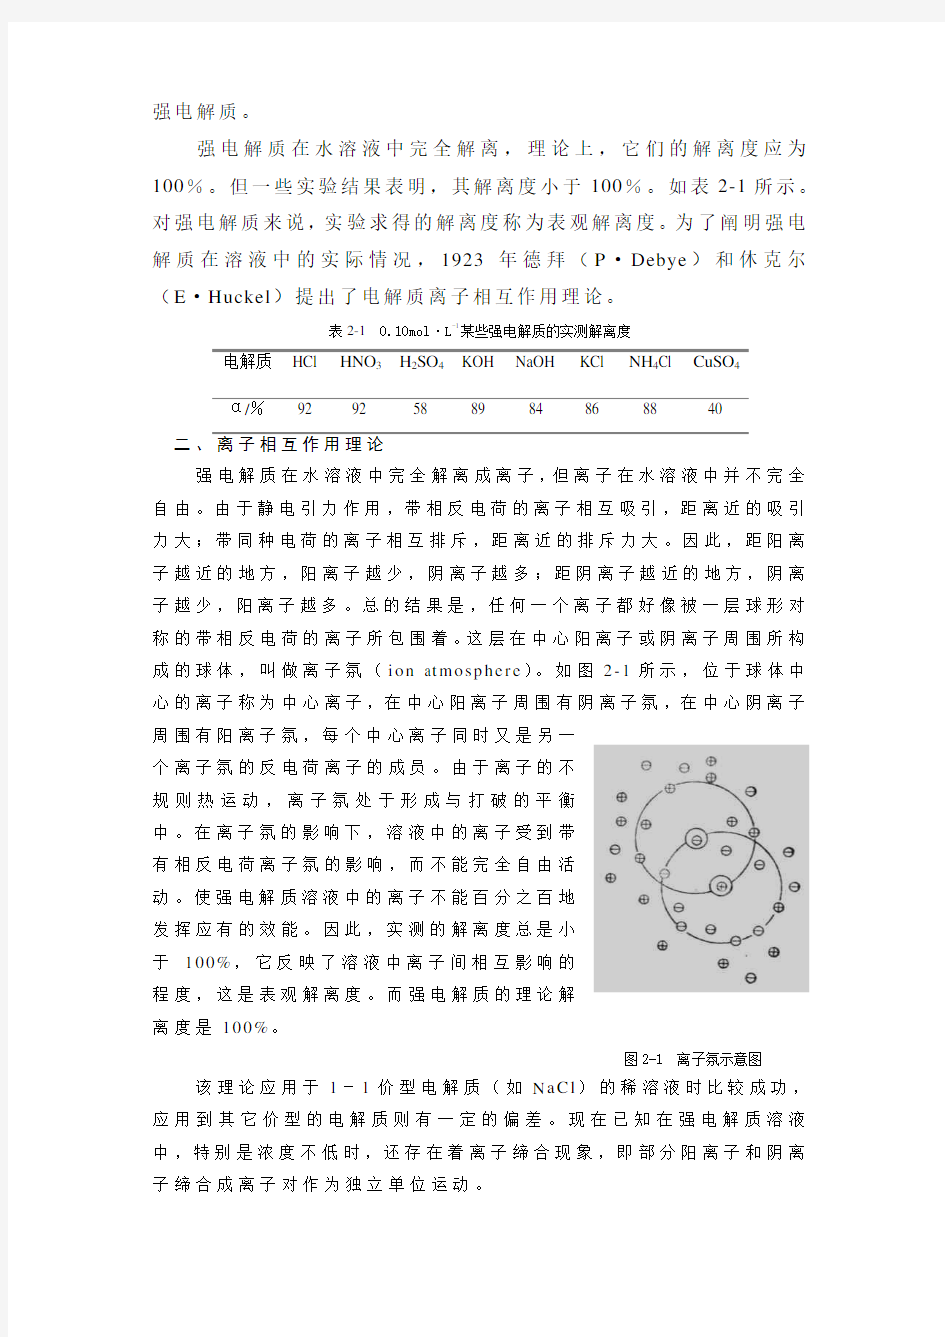 【北京大学】《医用基础化学》第二章  电解质溶液与缓冲溶液